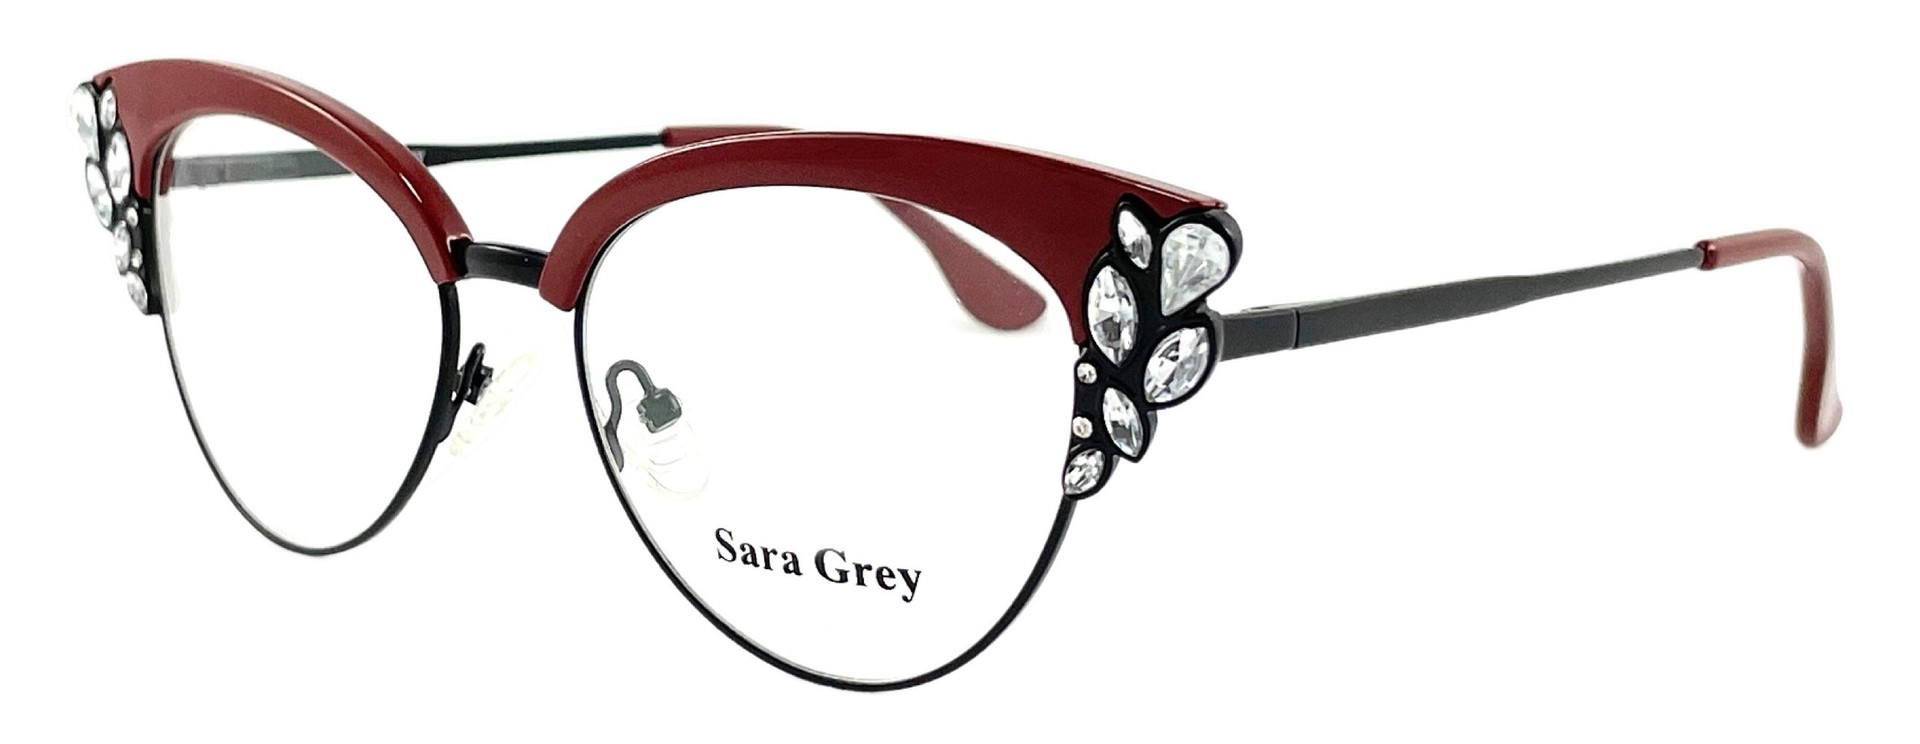 Sara Grey CH8416 C1 2